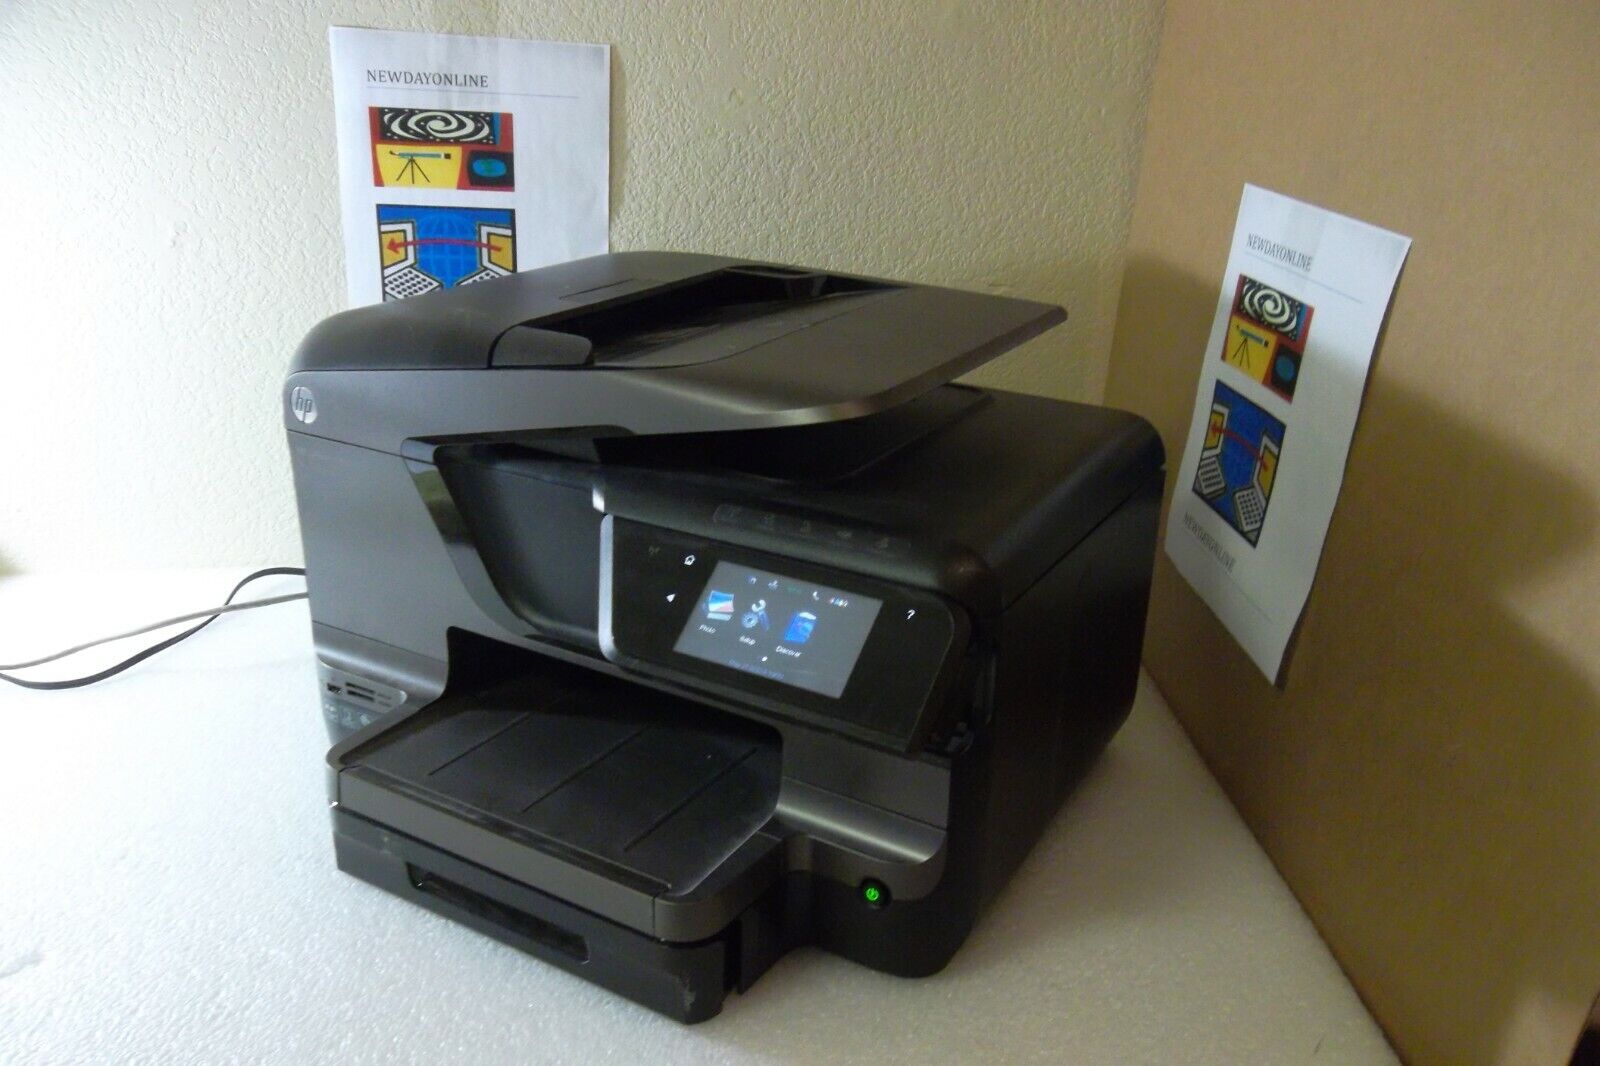 mond Overweldigen Versterker HP OfficeJet Pro 8600 N911g Plus Printer WiFi Copier Scan Fax 4.3" Touch  CM750A | eBay